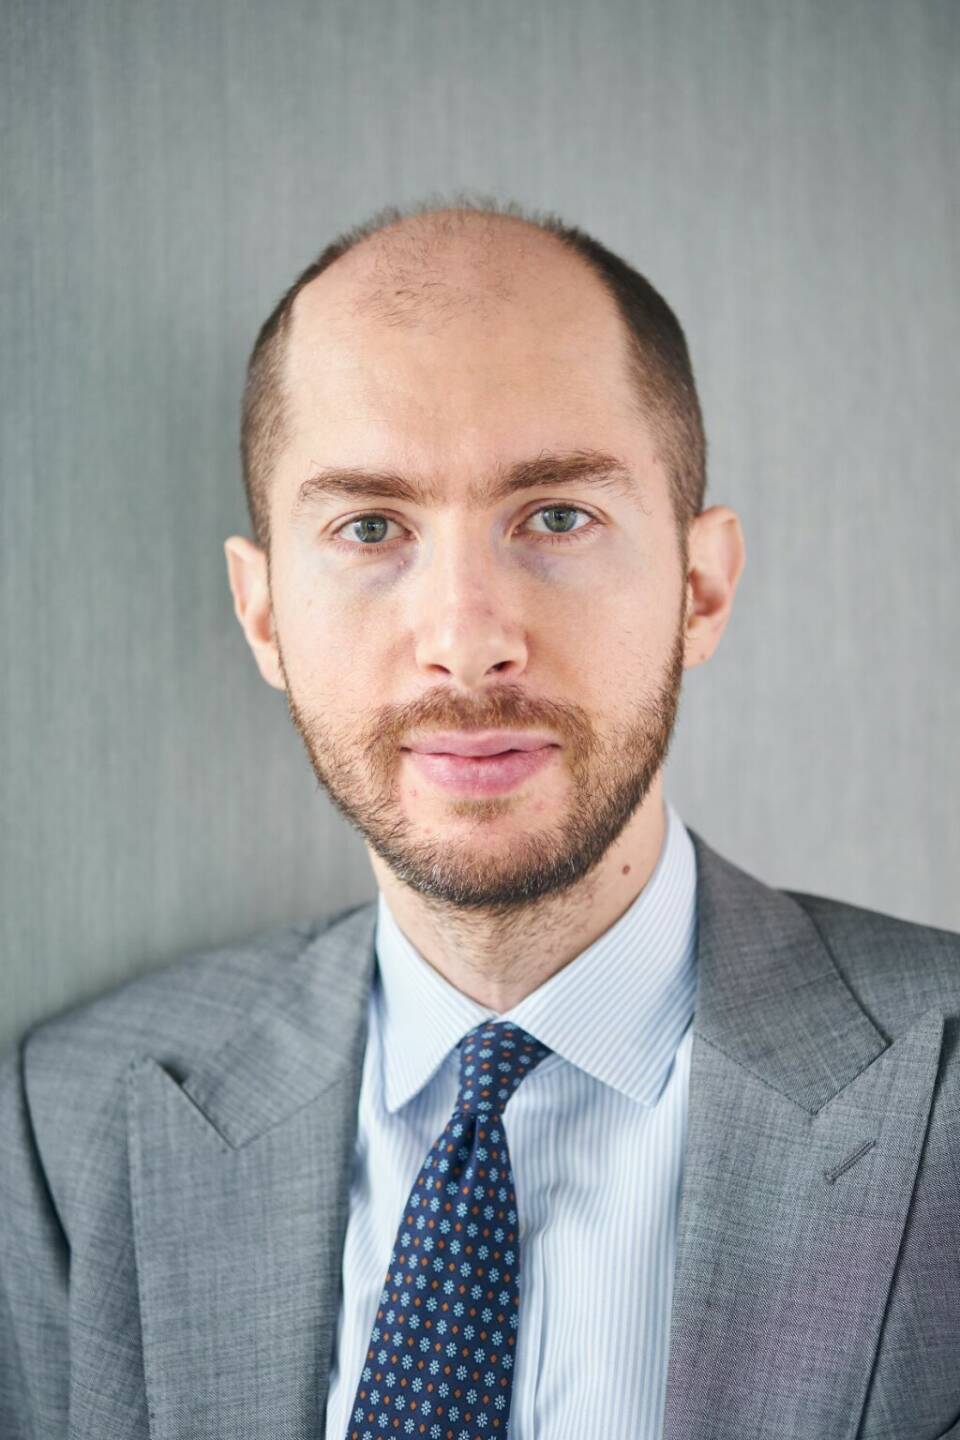 Stefano Amato startet heute bei M&G Investments als Senior Fund Manager im Multi Asset-Team; Credit: M&G